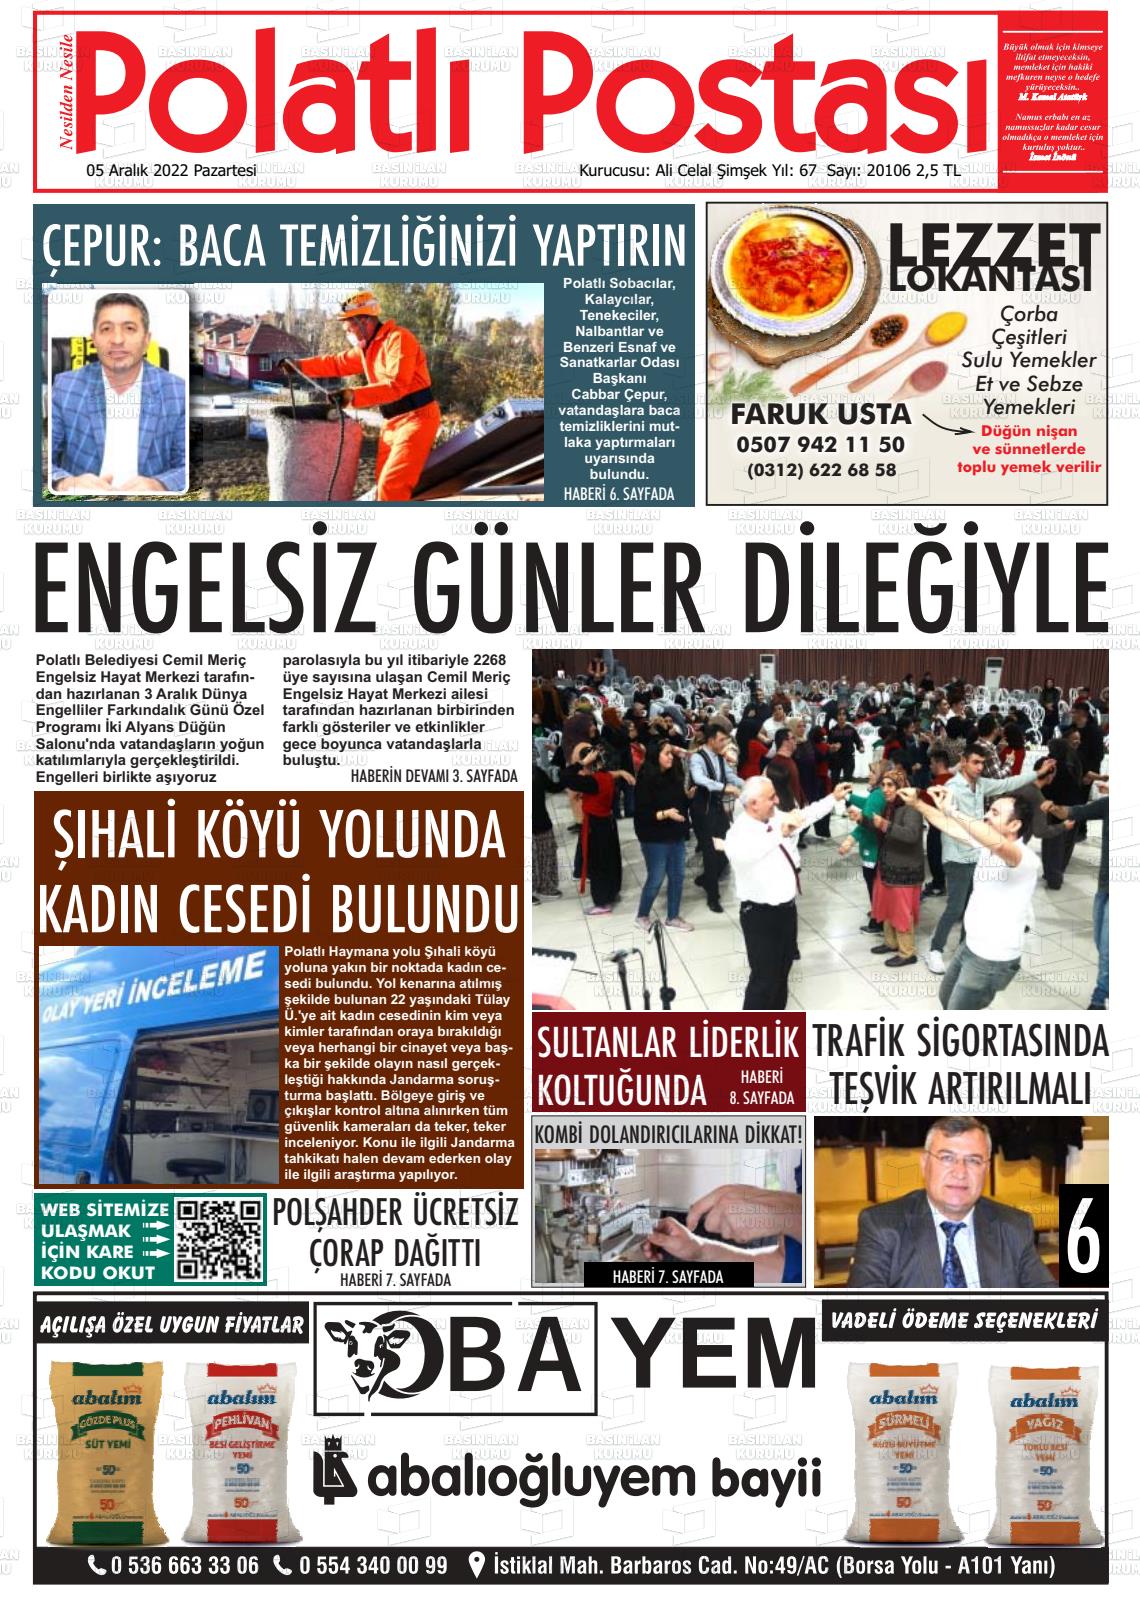 05 Aralık 2022 Polatlı Postası Gazete Manşeti